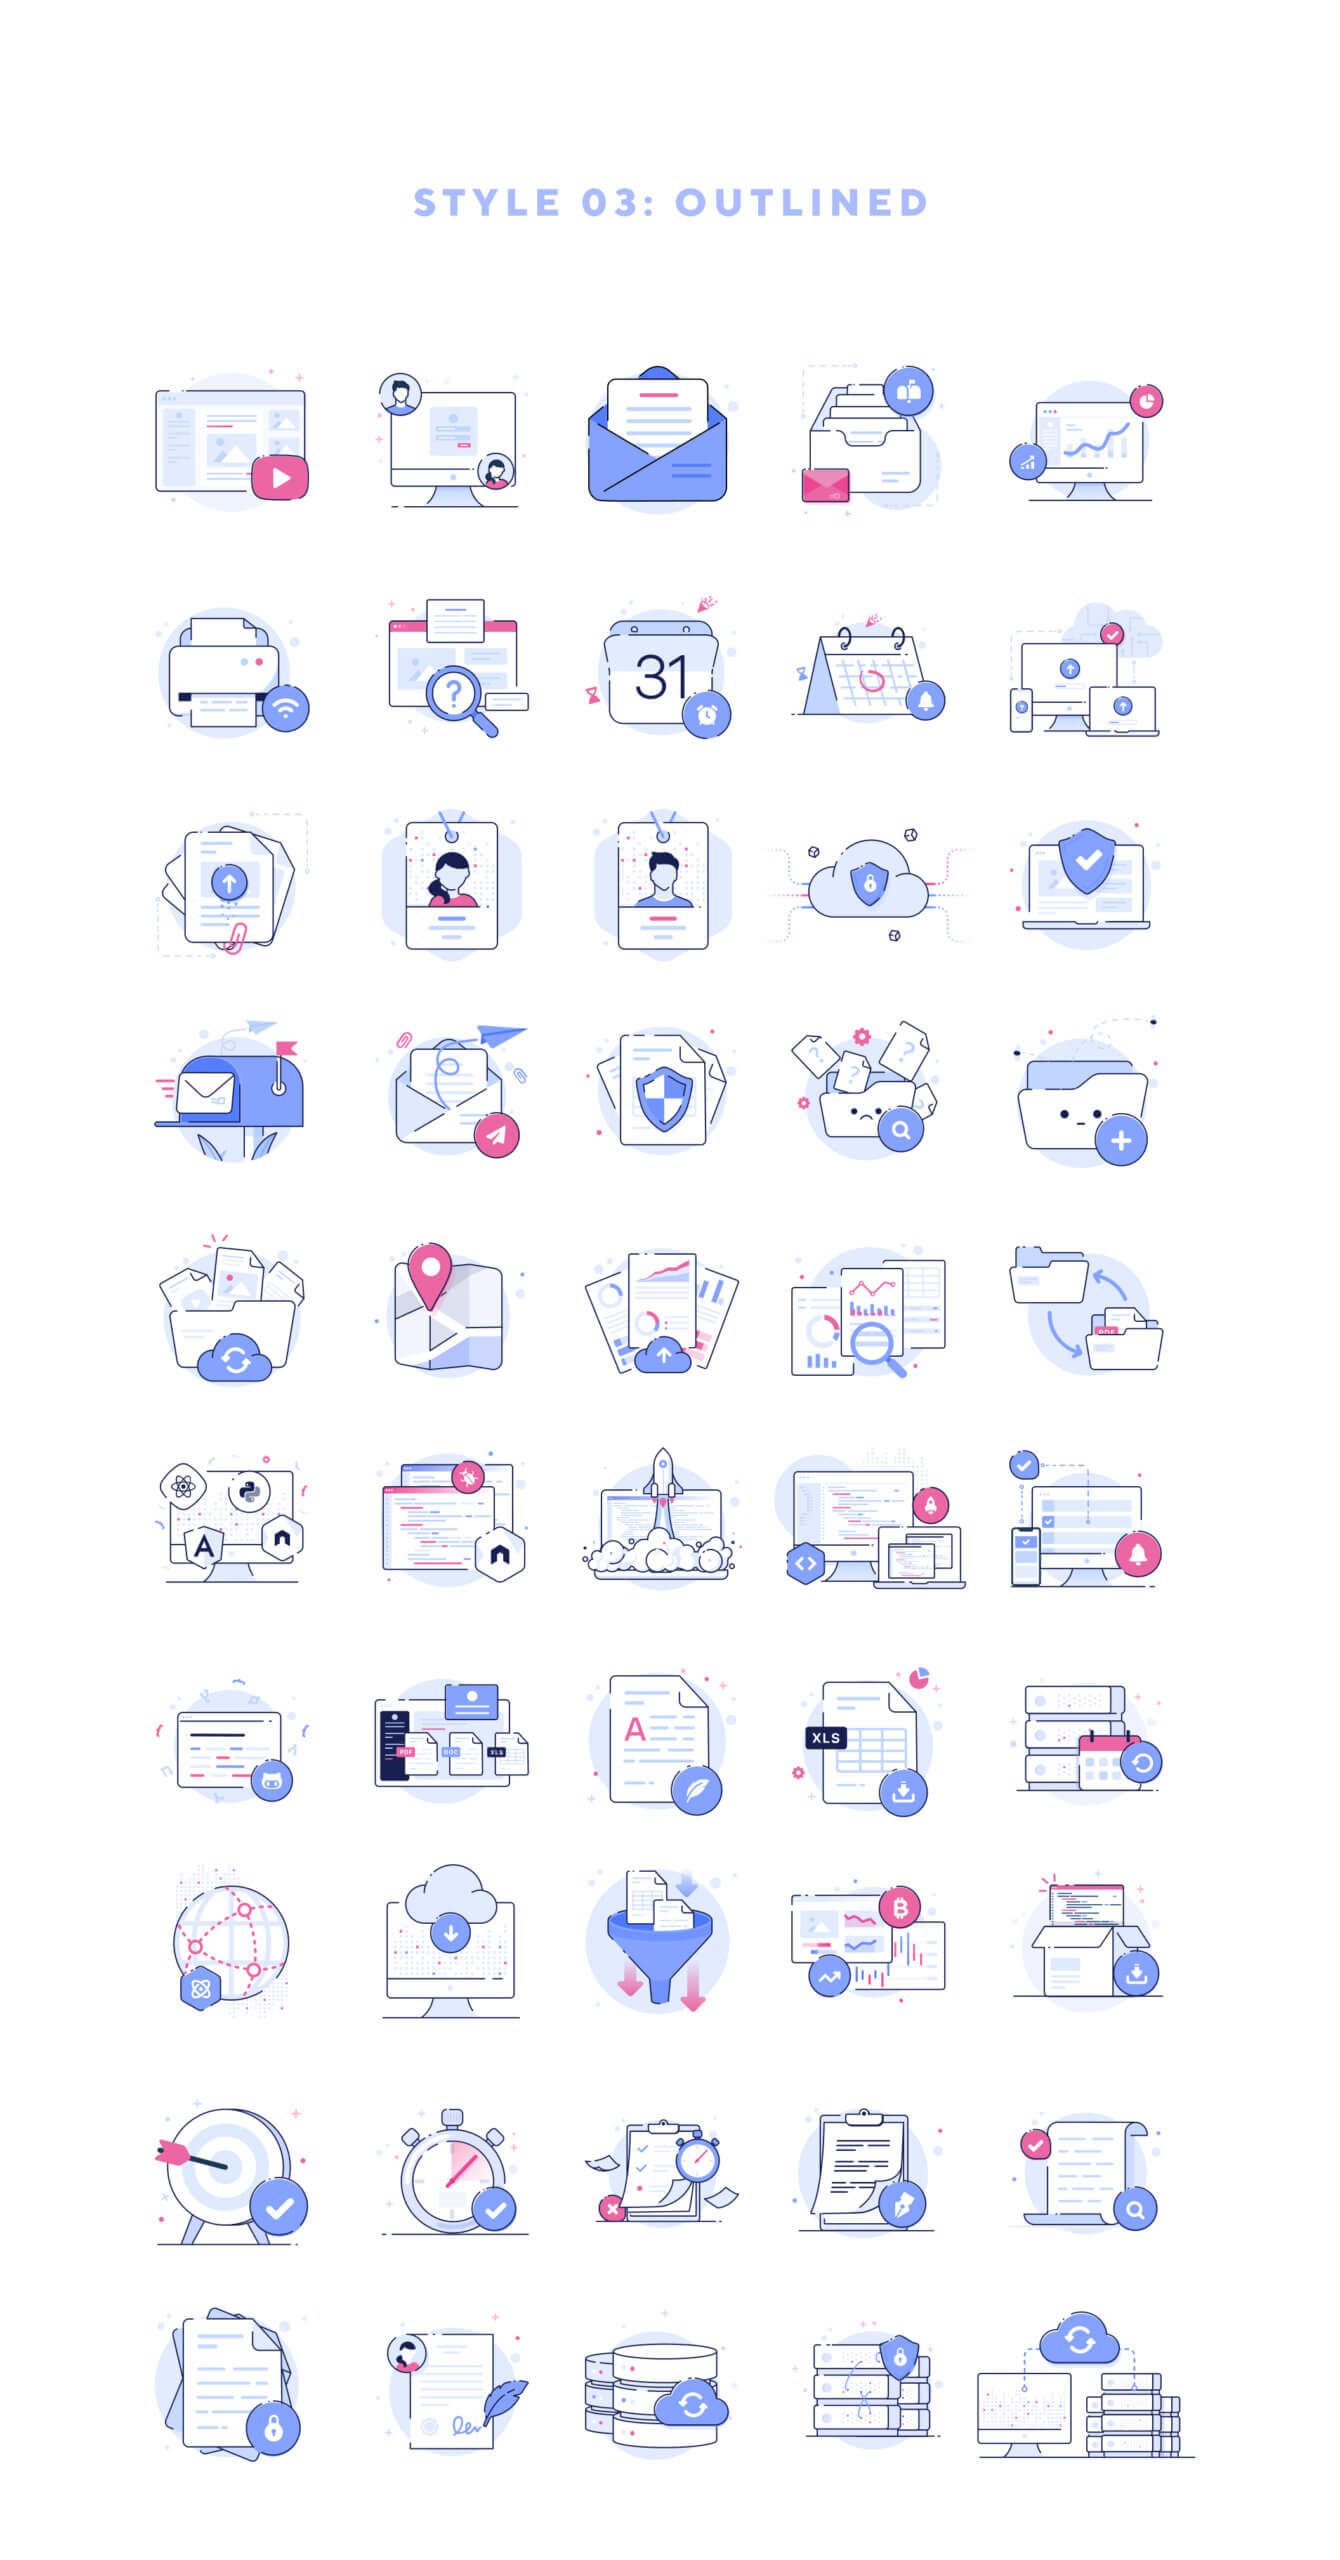 互联网概念概念化插图空状态插图模板素材Essential Web Icons Volume 2插图3